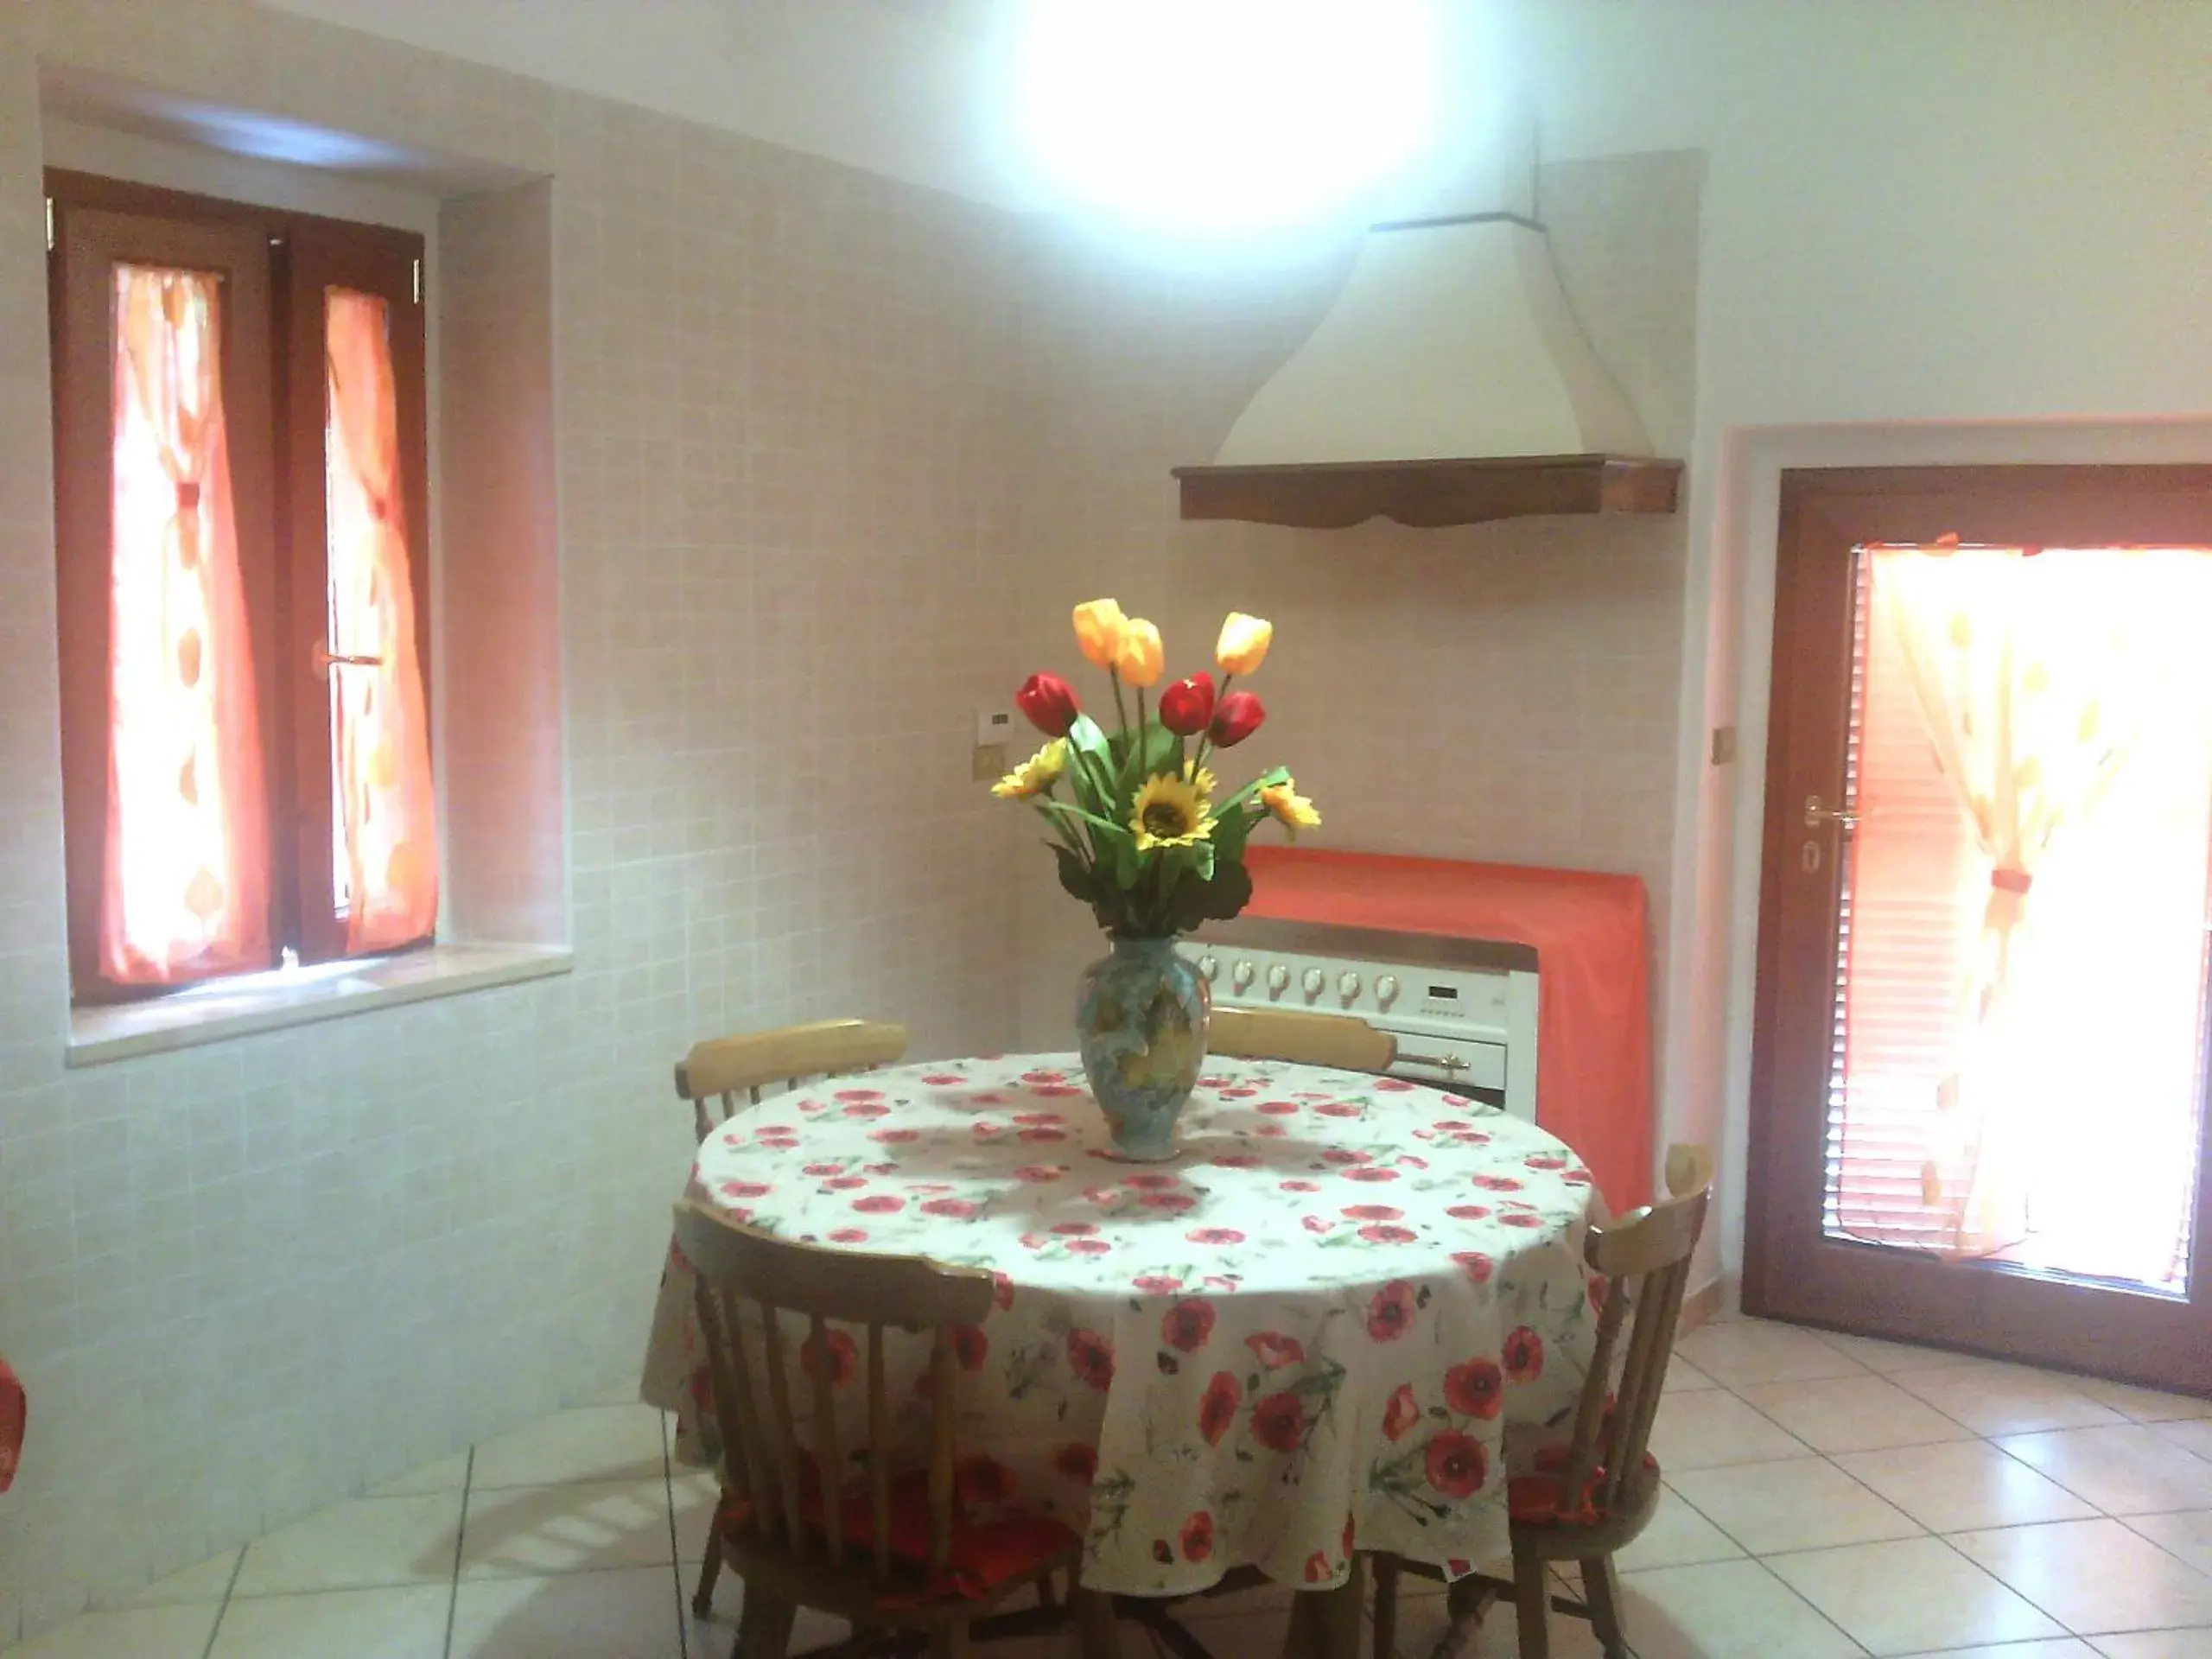 Area and facilities, Dining Area in B&B Rosa Dei Venti